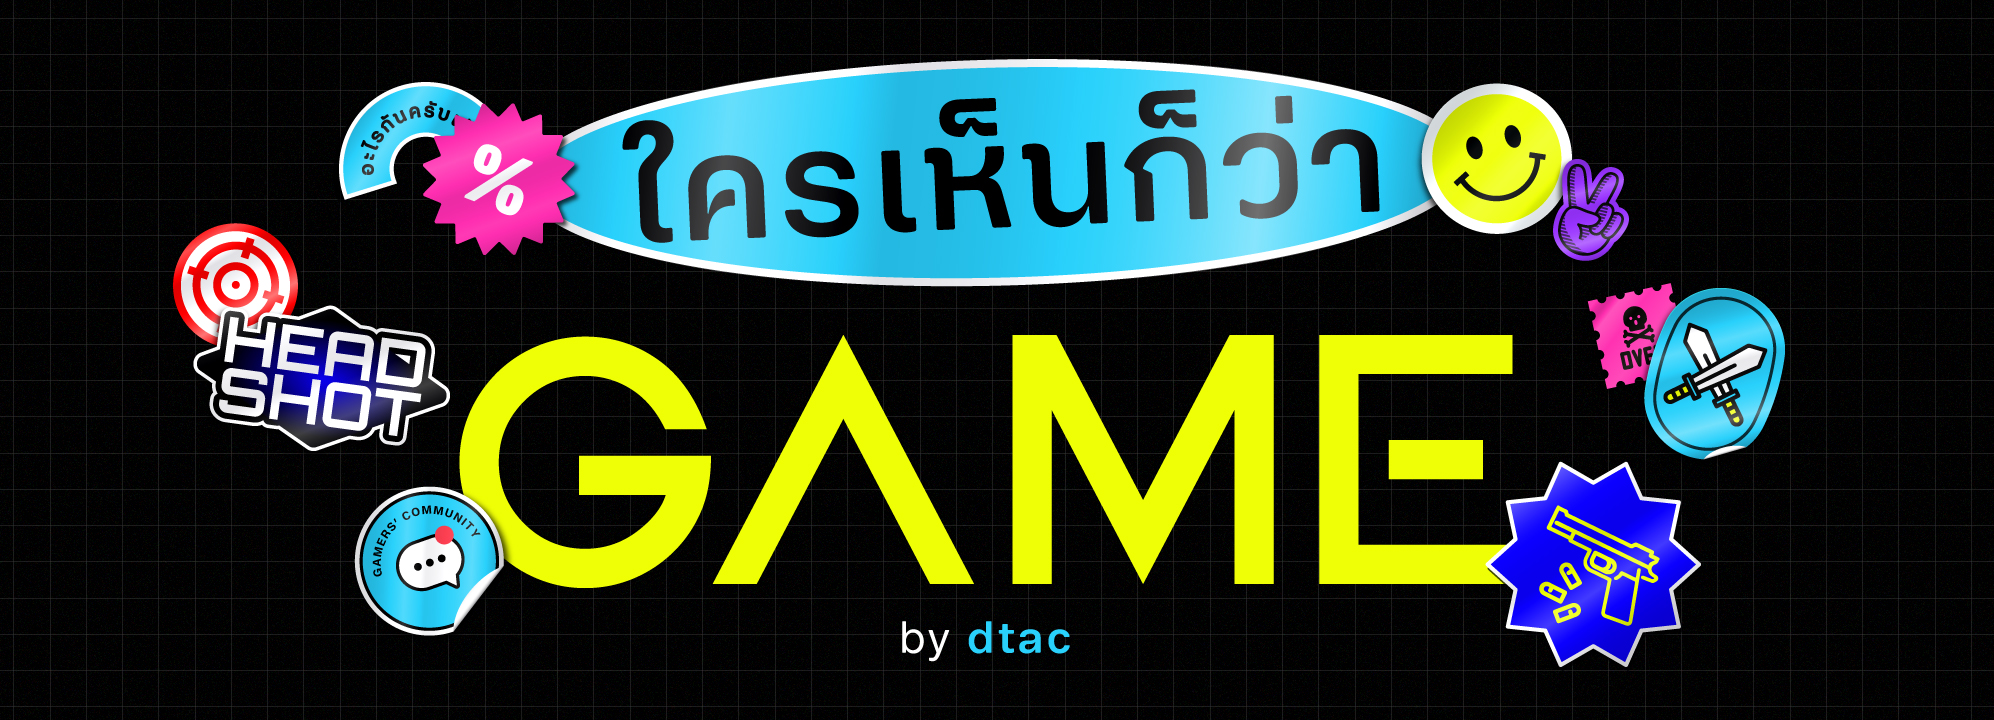 ดีแทคเปิดตัว “ใครเห็นก็ว่าเกม by dtac” Facebook Page สำหรับเกมเมอร์ทุกคน